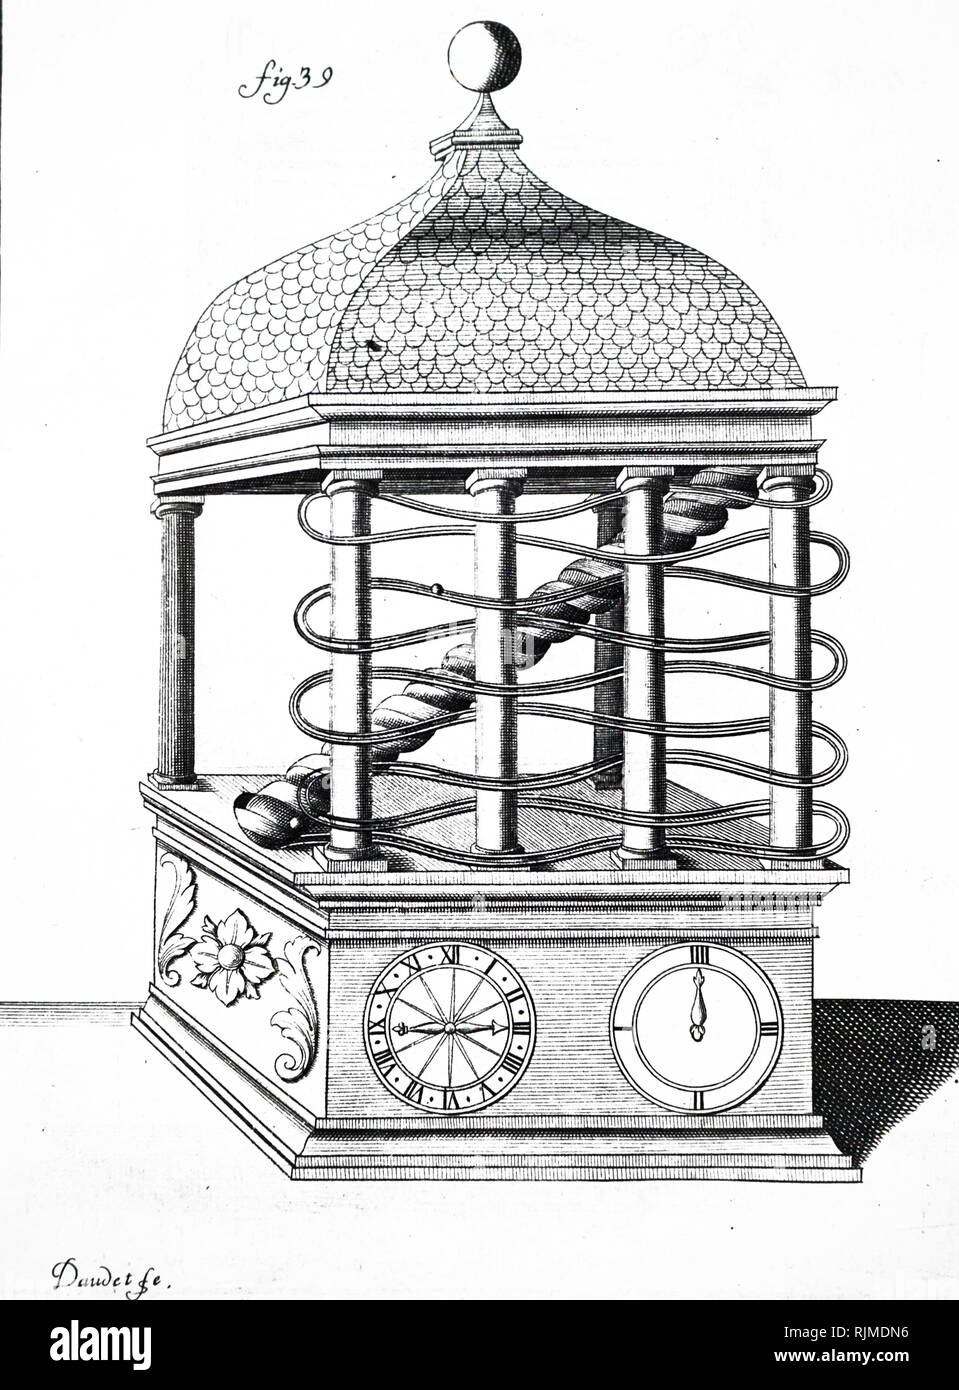 Illustrazione che mostra la cupola sostenuta da colonne, in piedi su una base. Avvolto intorno a quattro colonne sono parallelamente due guide inclinate verso il basso che una palla rotola. Quando si raggiunge il fondo è guidato in una coclea che solleva la sfera sulla parte superiore della sua corsa di nuovo. Nella base è il clock del meccanismo di azionamento che ruota la vite di Archimede e gestisce i quadranti. Prom Gas-parte Grollier de Serviere Rec-euil d'Ouvrages Curieux de Math-ematique et de mecanique, ou description de Cabinet de Monsieur de Grollier Serviere, Lione, 1719. Foto Stock